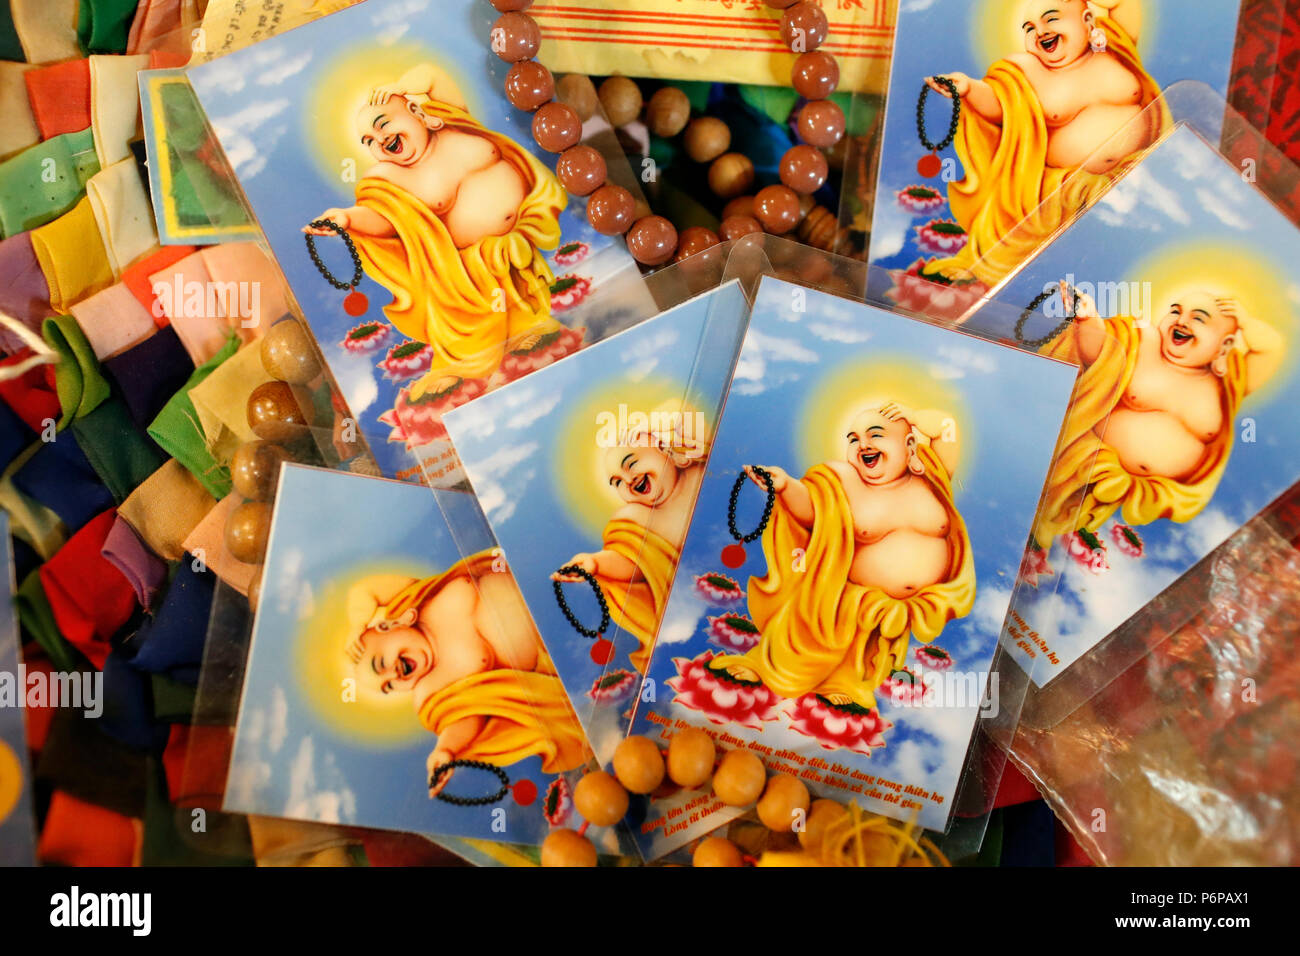 Laughing Buddha imágenes para el Año Nuevo chino. Saint-Pierre en Faucigny. Francia. Foto de stock